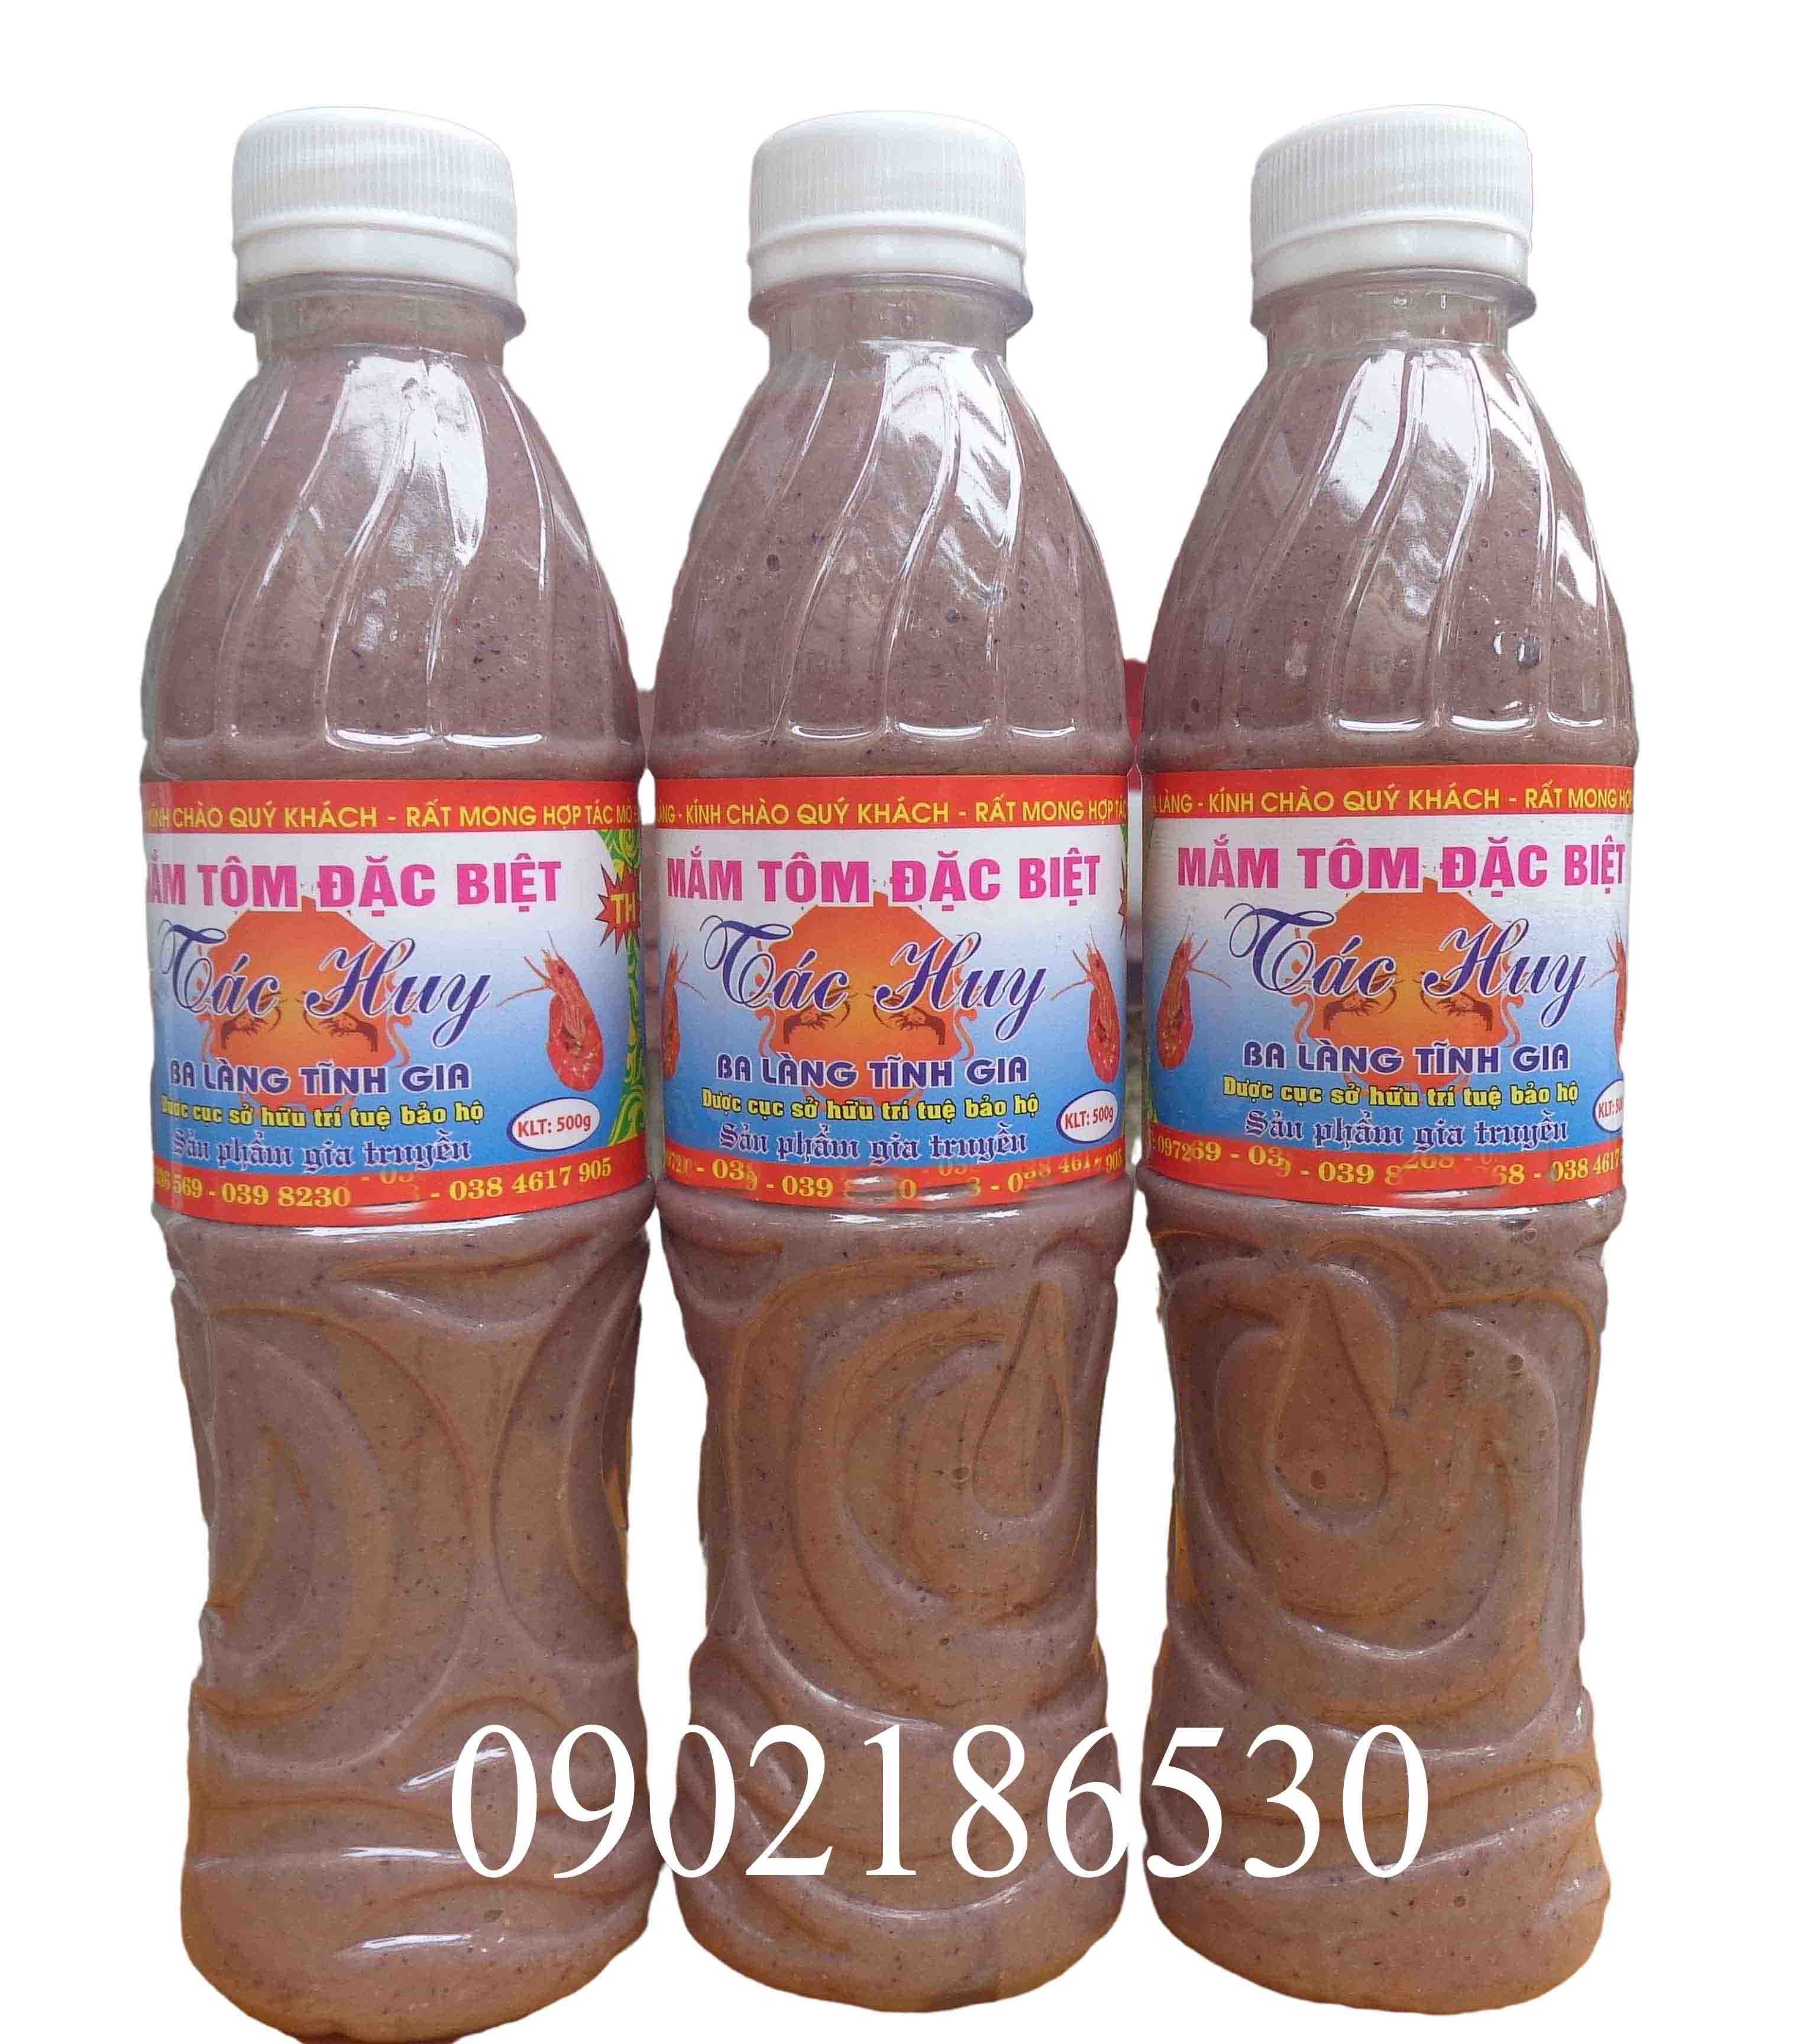 Mắm tôm đặc sản Thanh Hóa (cơ sở Tác Huy) (chai 500ml)